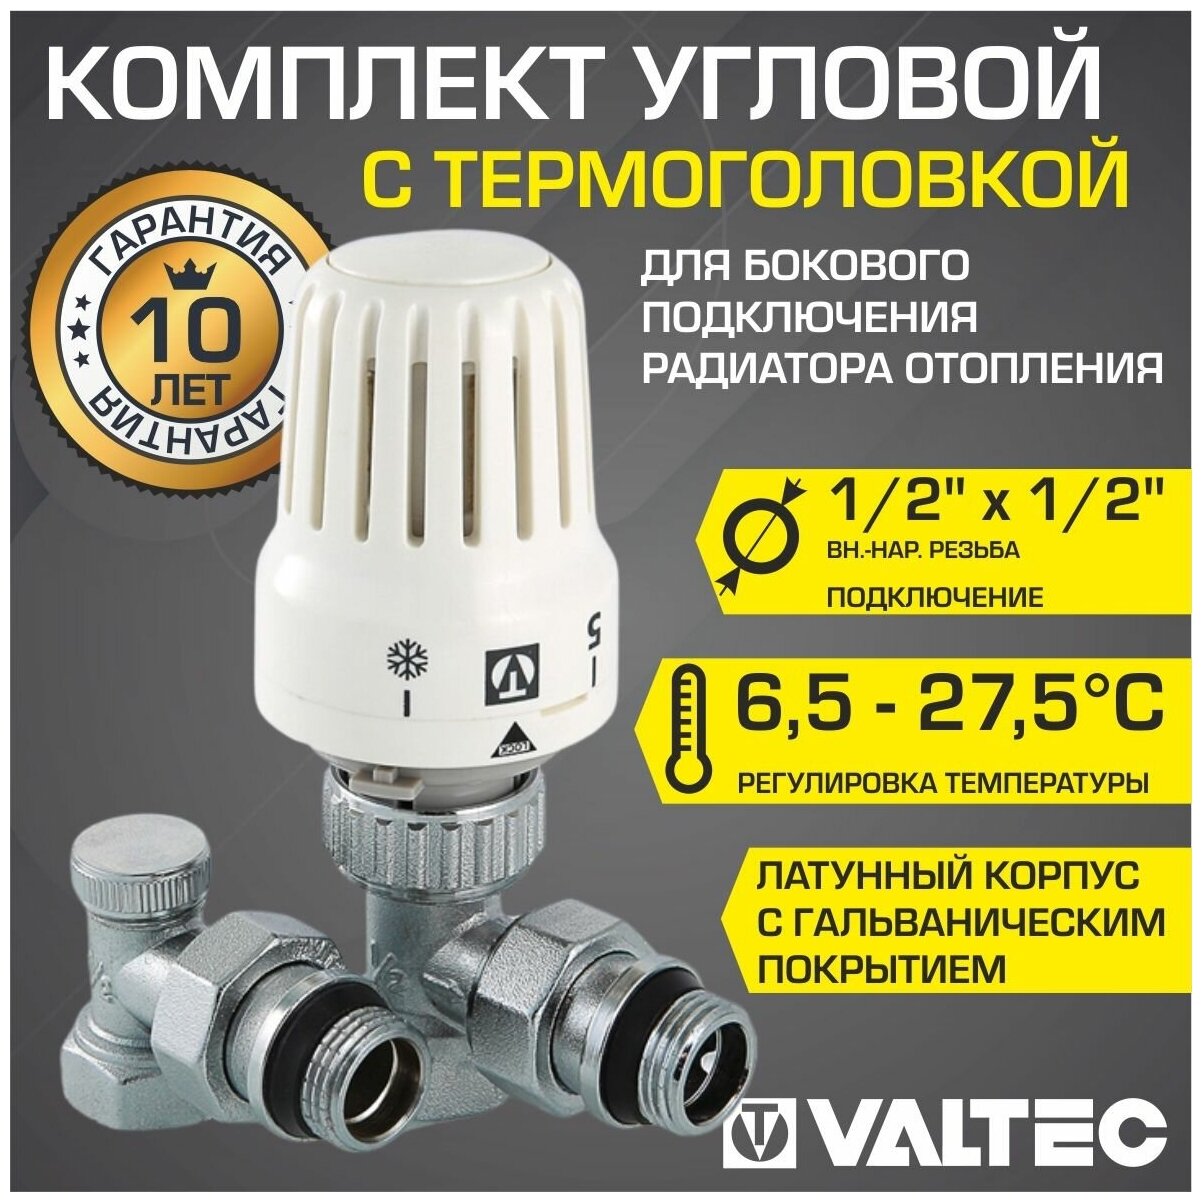 Комплект терморегулирюущего оборудования для радиатора Valtec - фото №6